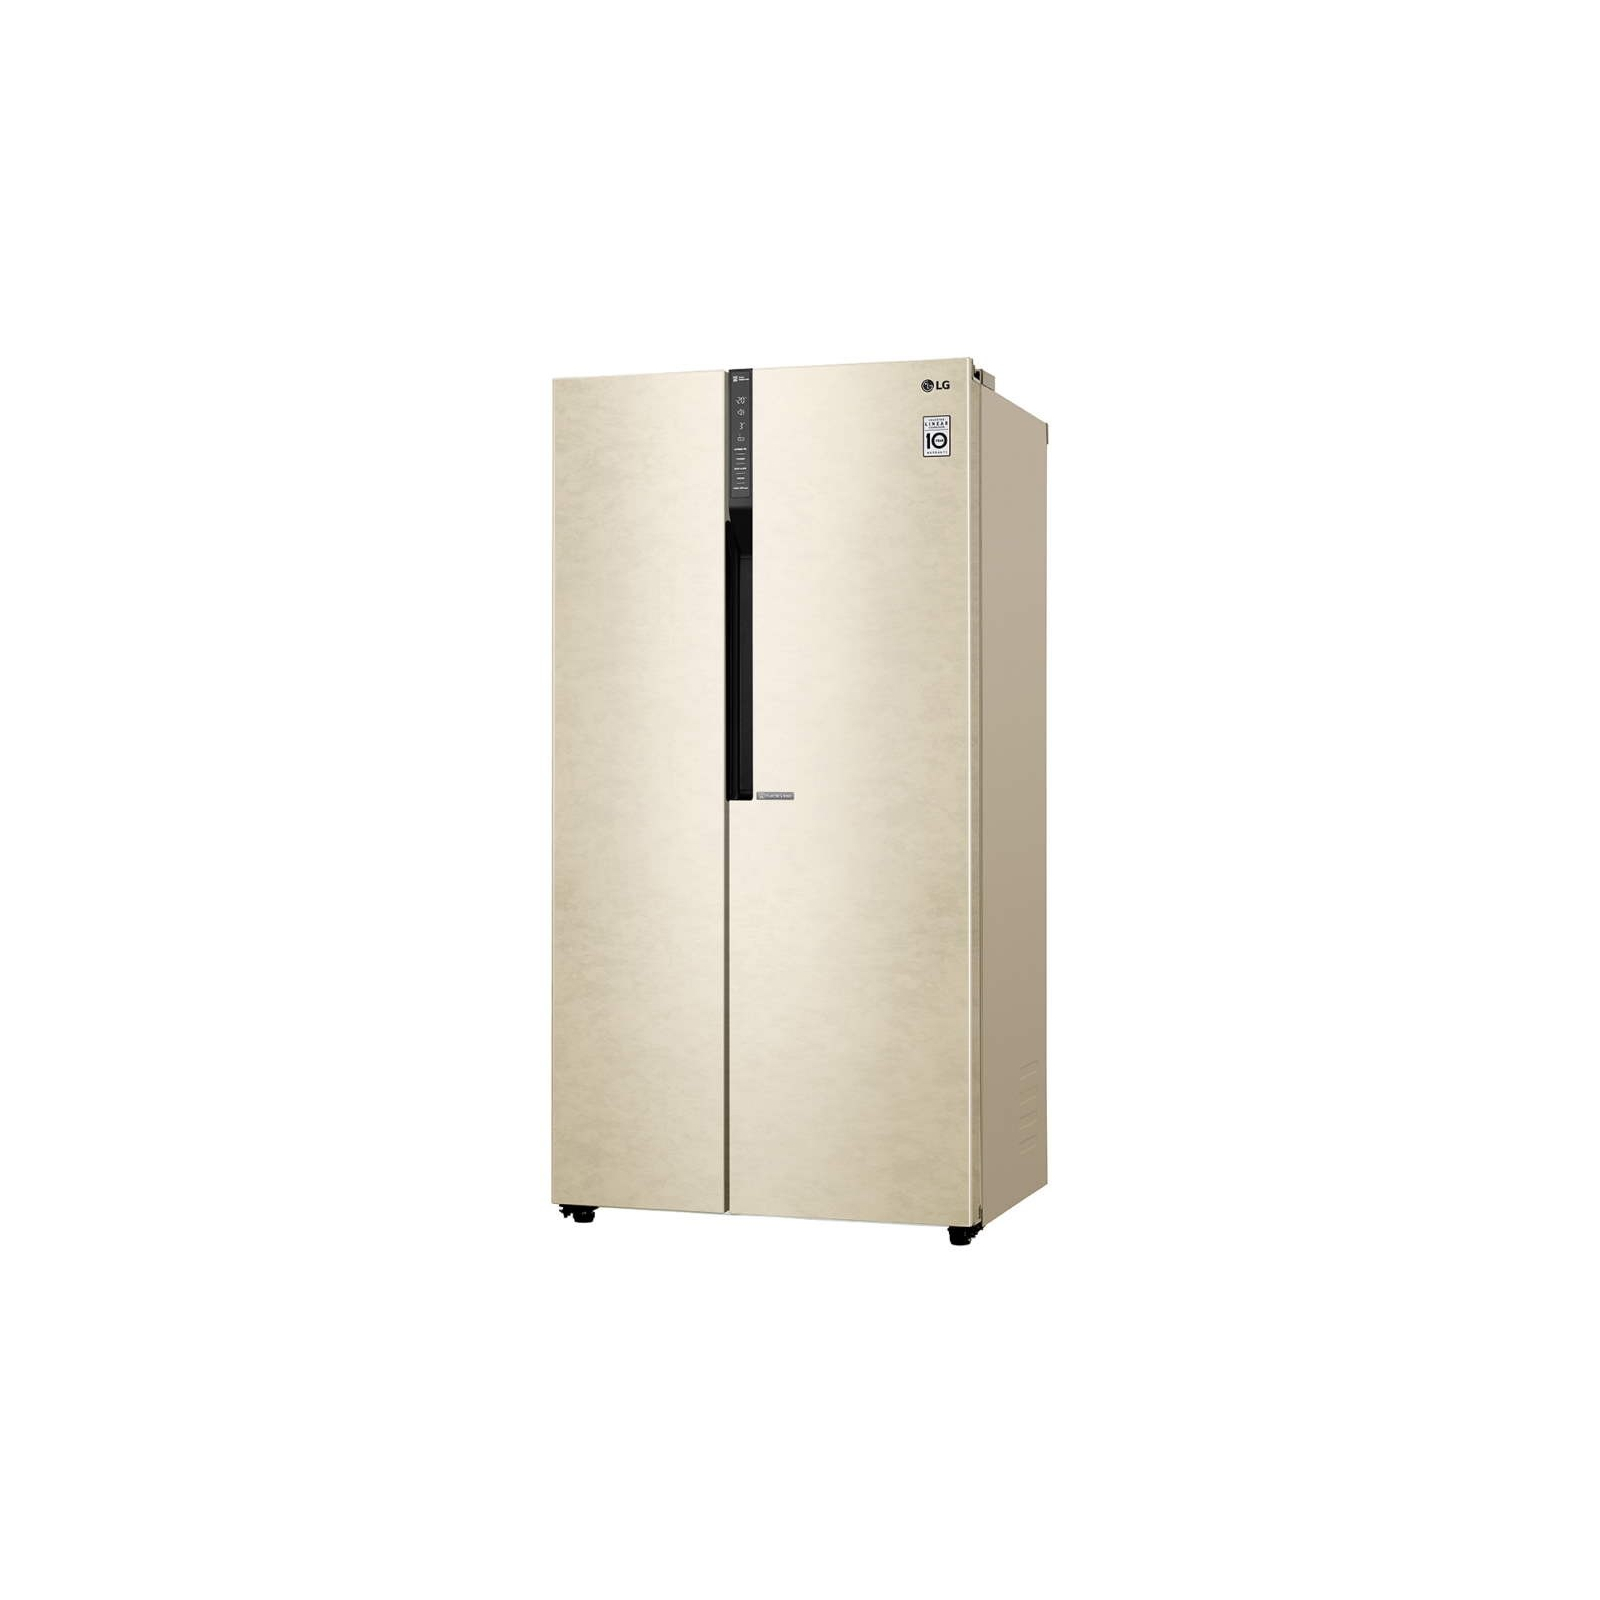 Холодильник LG GC-B247JEDV зображення 3